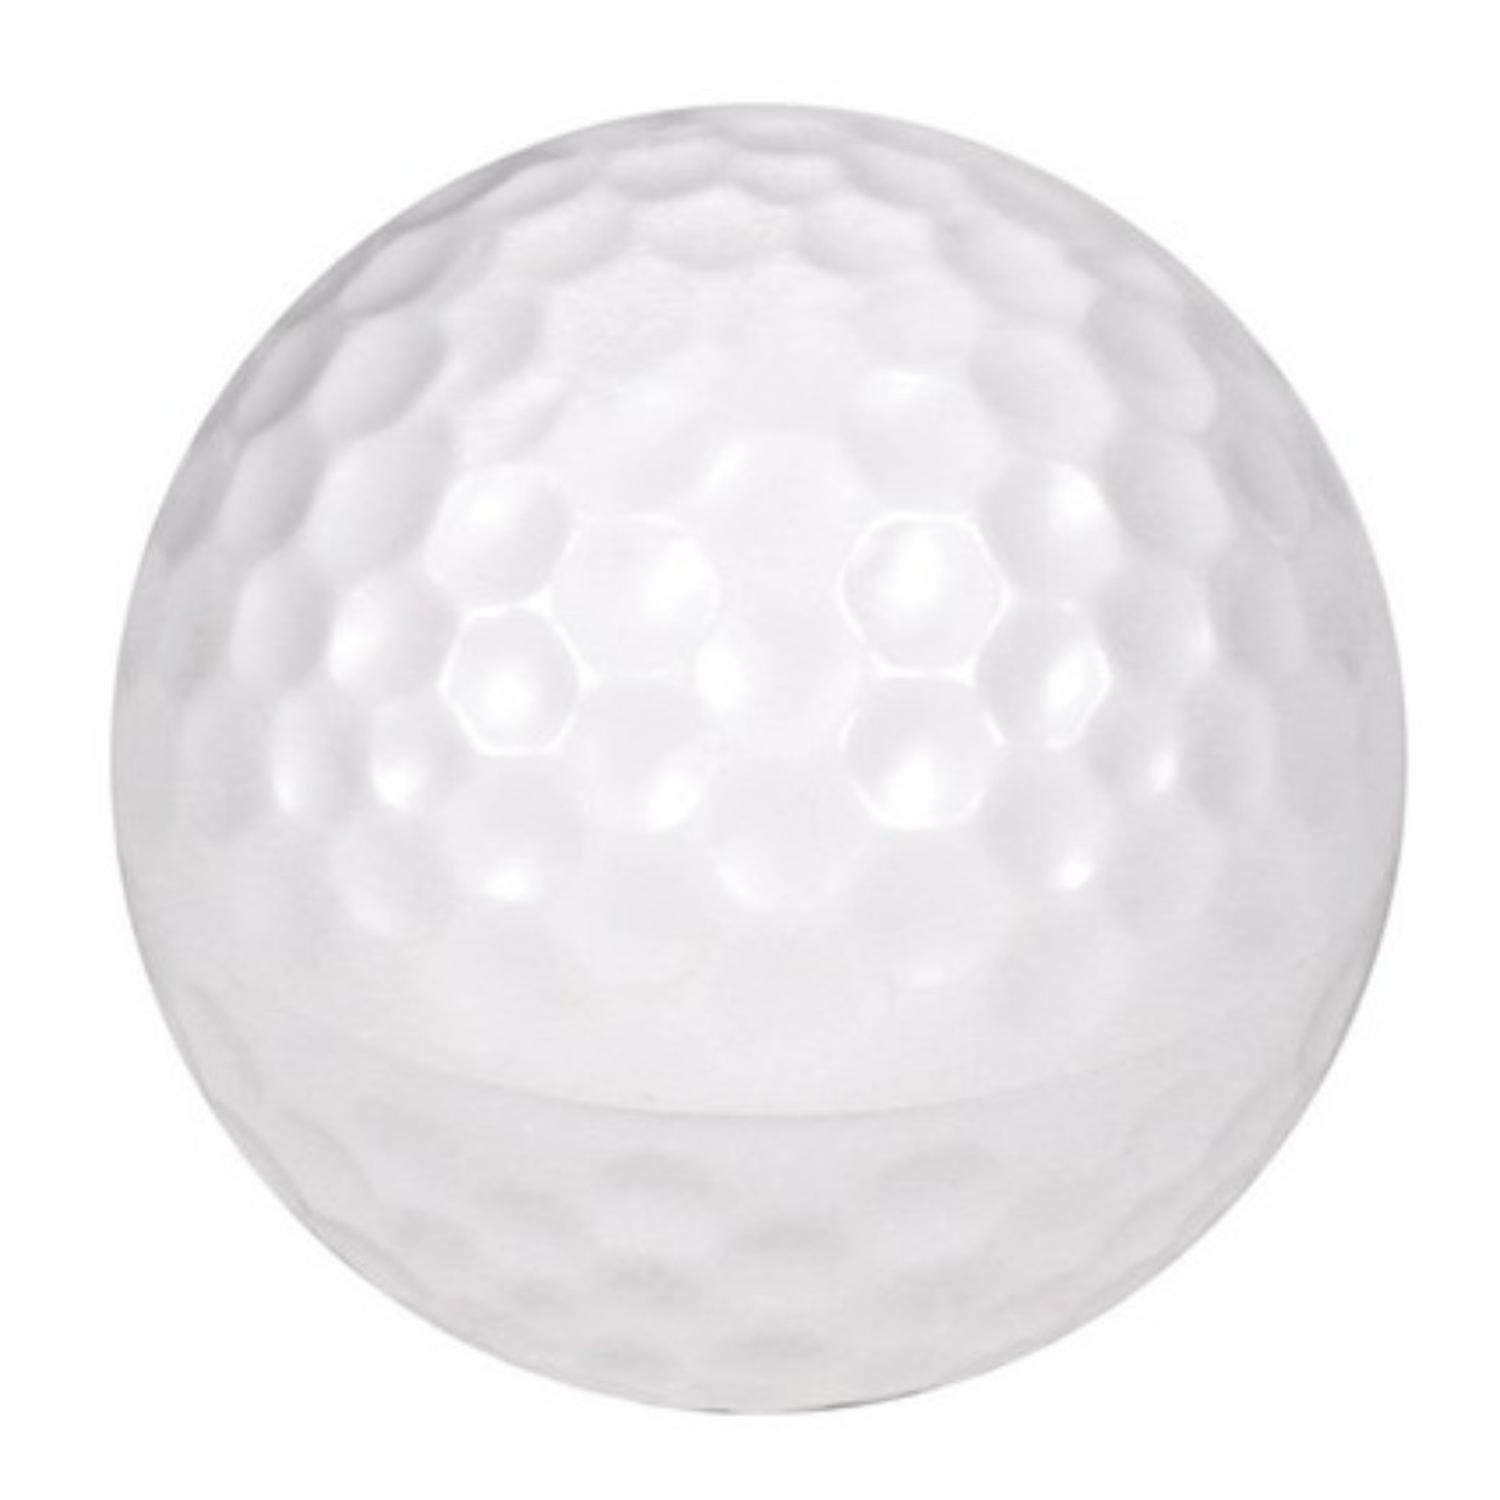 Labial genérico en forma de pelota de golf